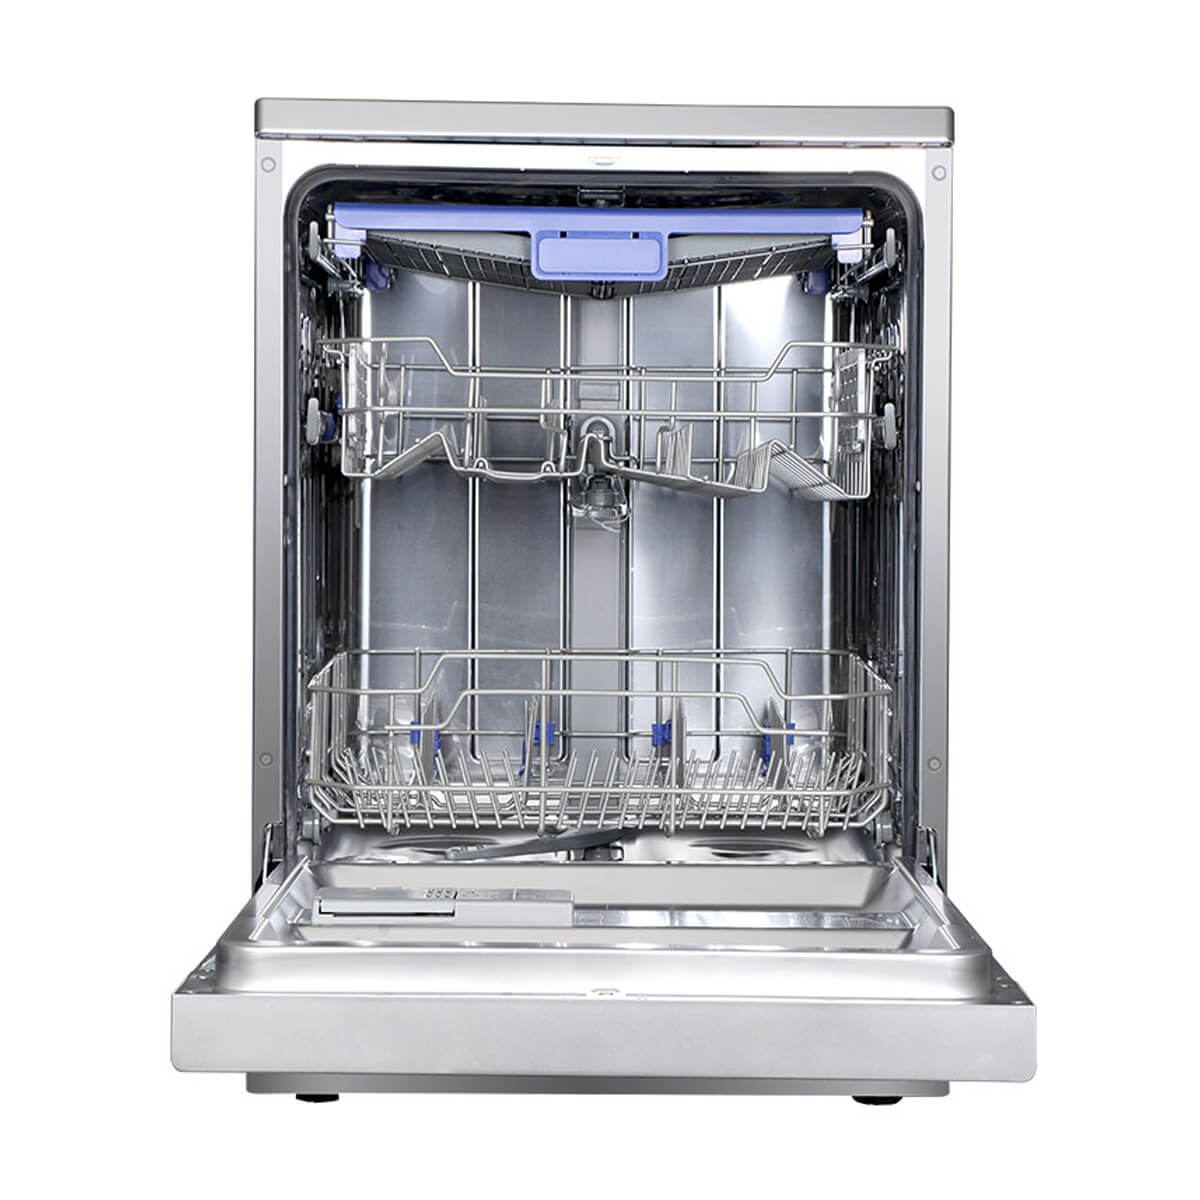 ظرفشویی پاکشوما مدل MDF-14302 با ظرفیت 14 نفره و نمایشگر لمسی - فروشگاه شهرپاکشوما